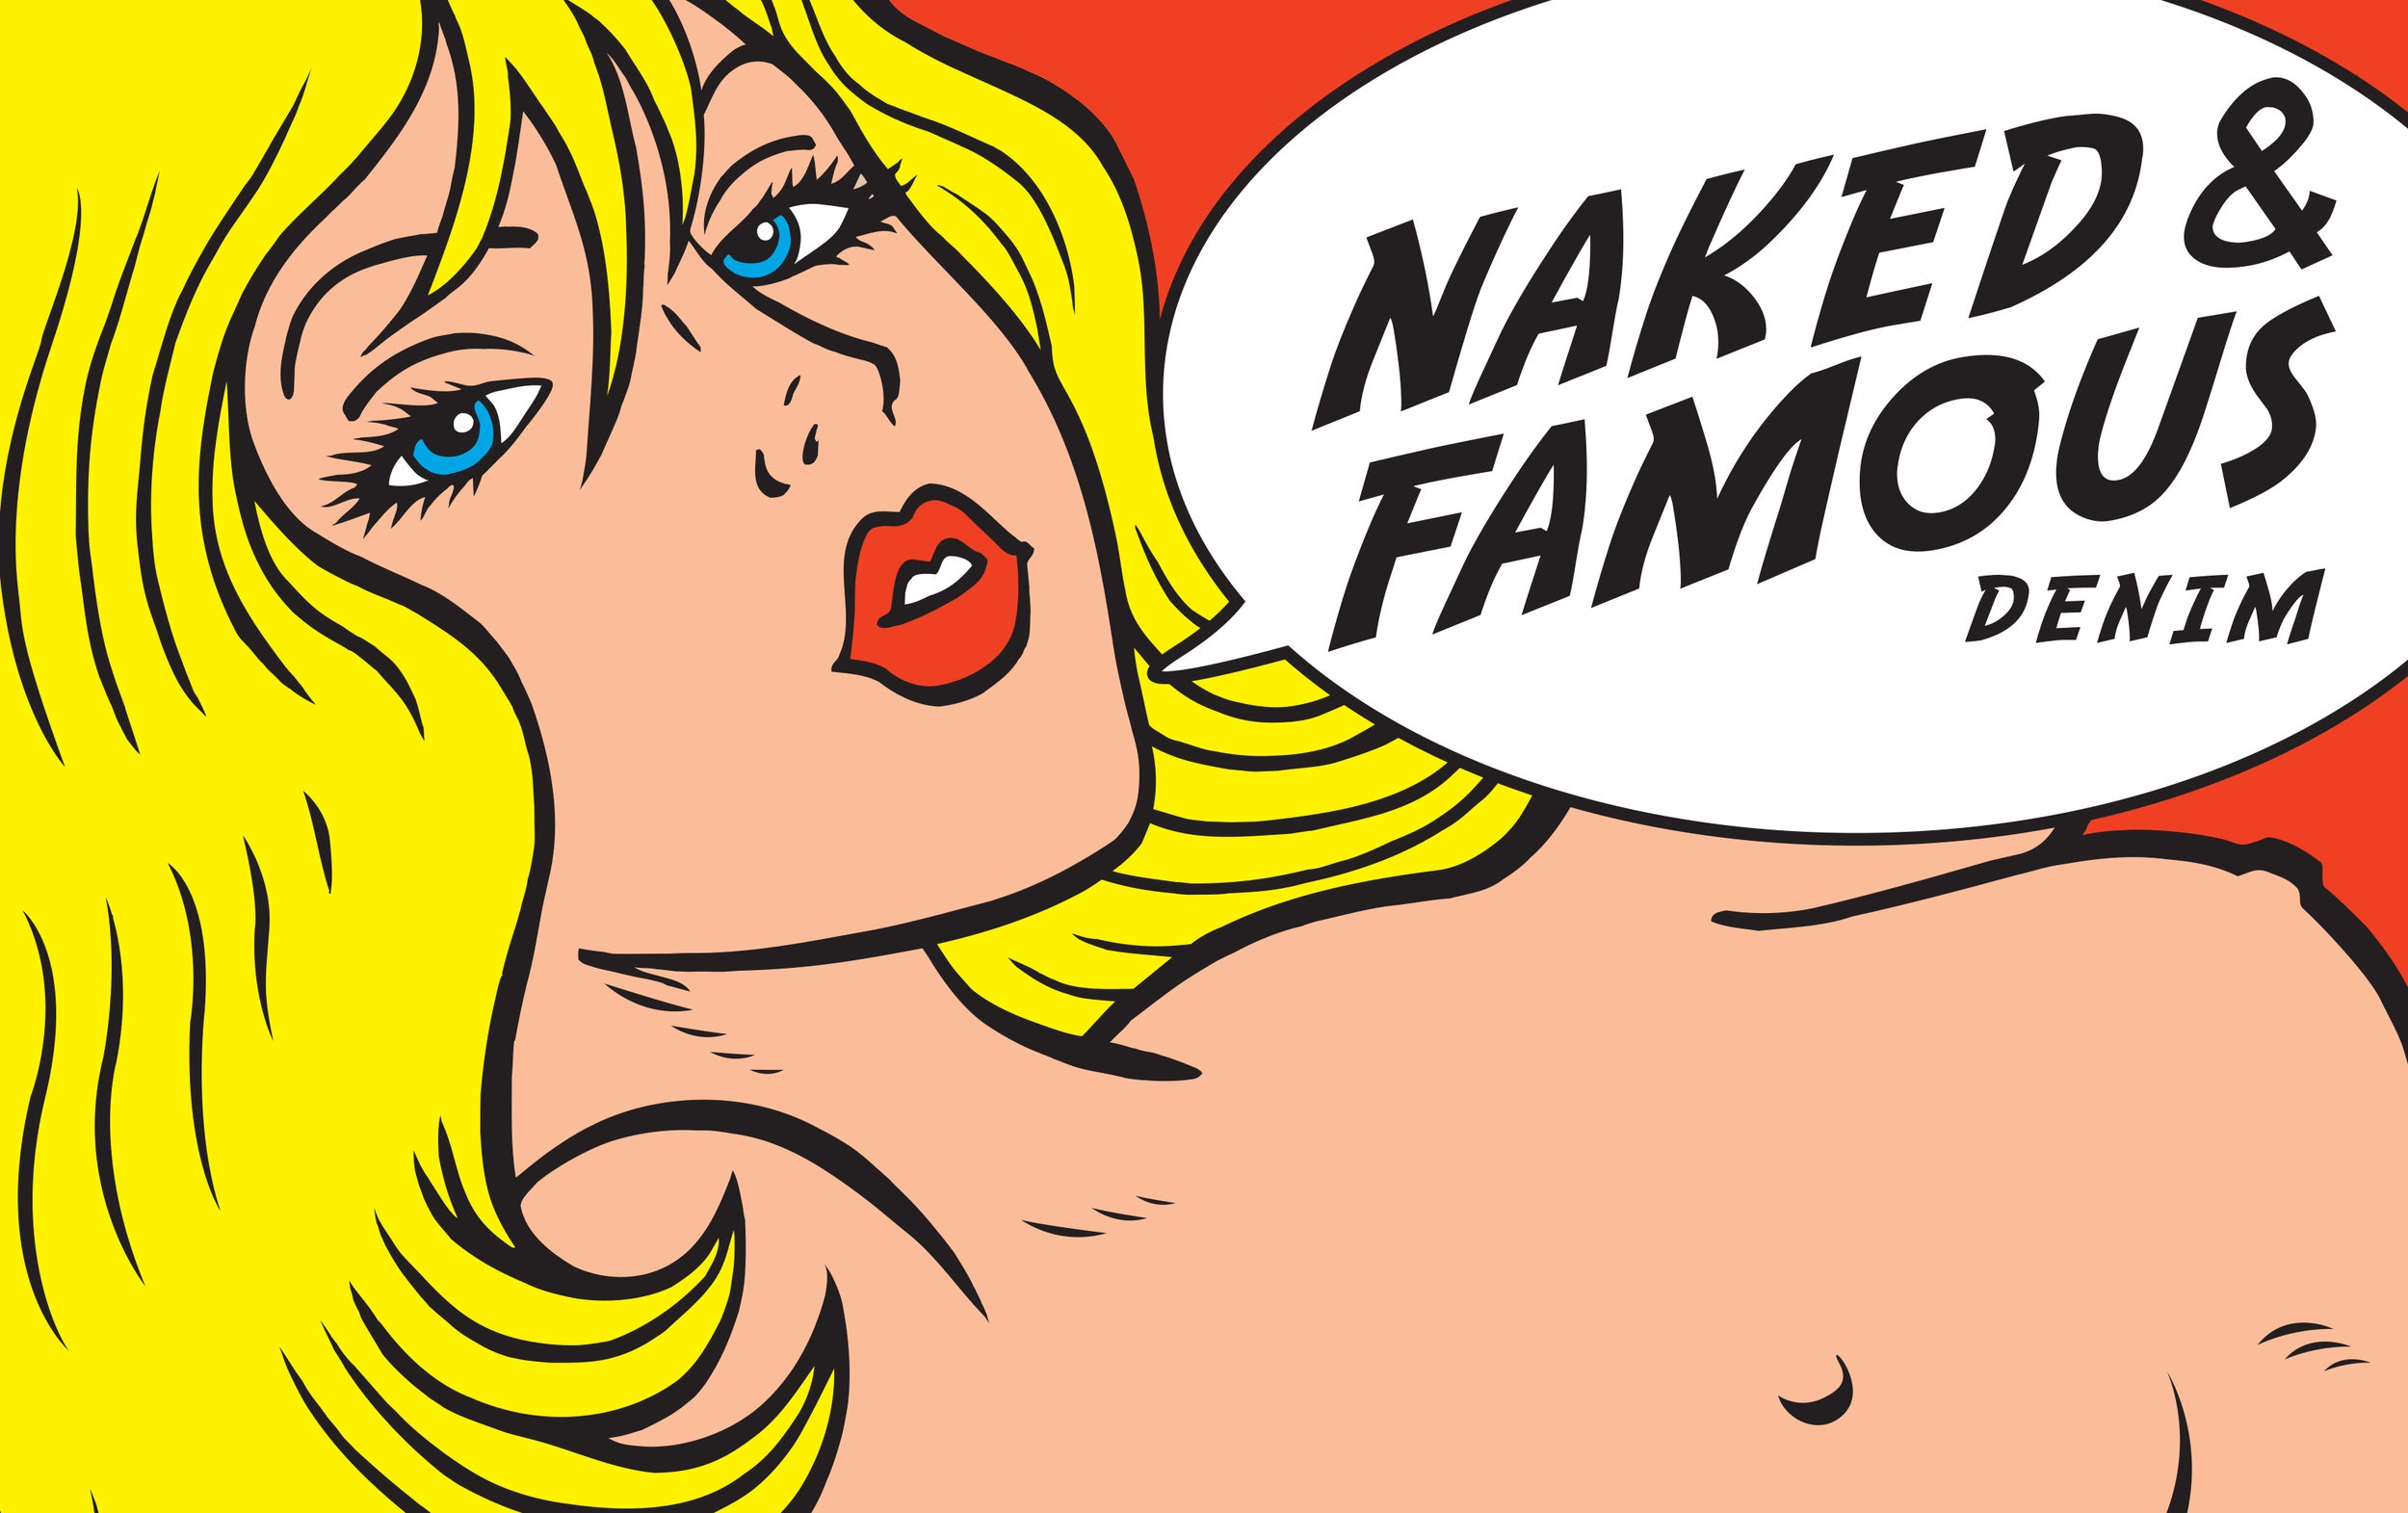 Naked & Famous Denim Logo Image